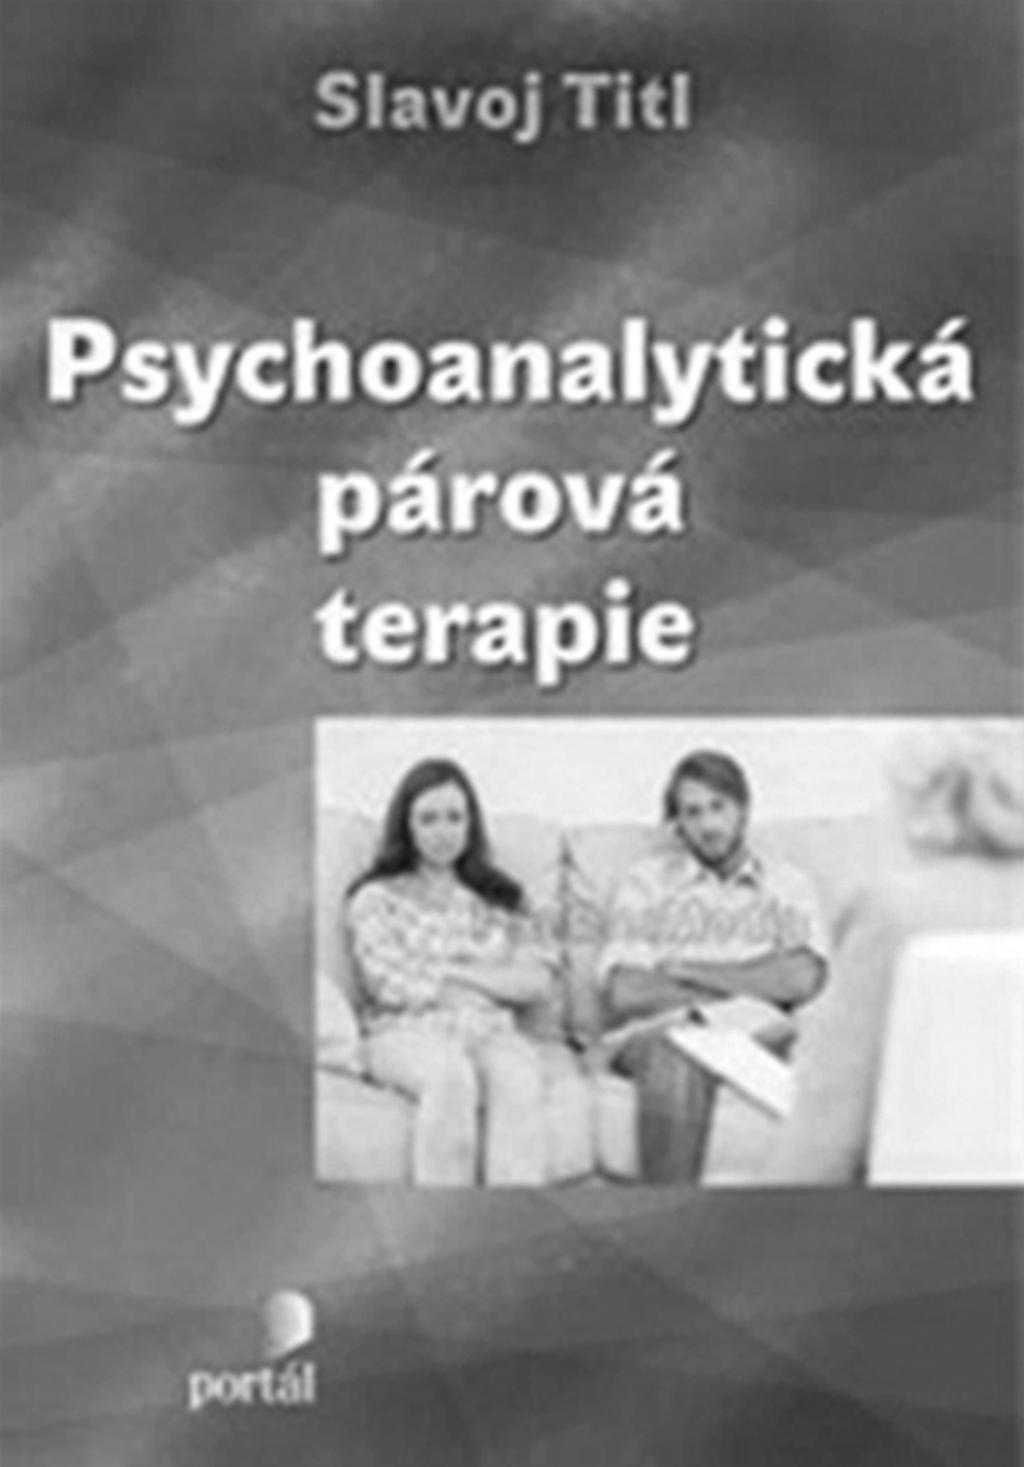 JE MOŽNÉ TERAPEUTICKY POMOCI PÁRŮM, 2014: 241 244 JE MOŽNÉ TERAPEUTICKY POMOCI PÁRÙM PSYCHOANALYTICKÝM ZPÙSOBEM? Slavoj Titl (2014). Psychoanalytická párová terapie. Praha, Portál.